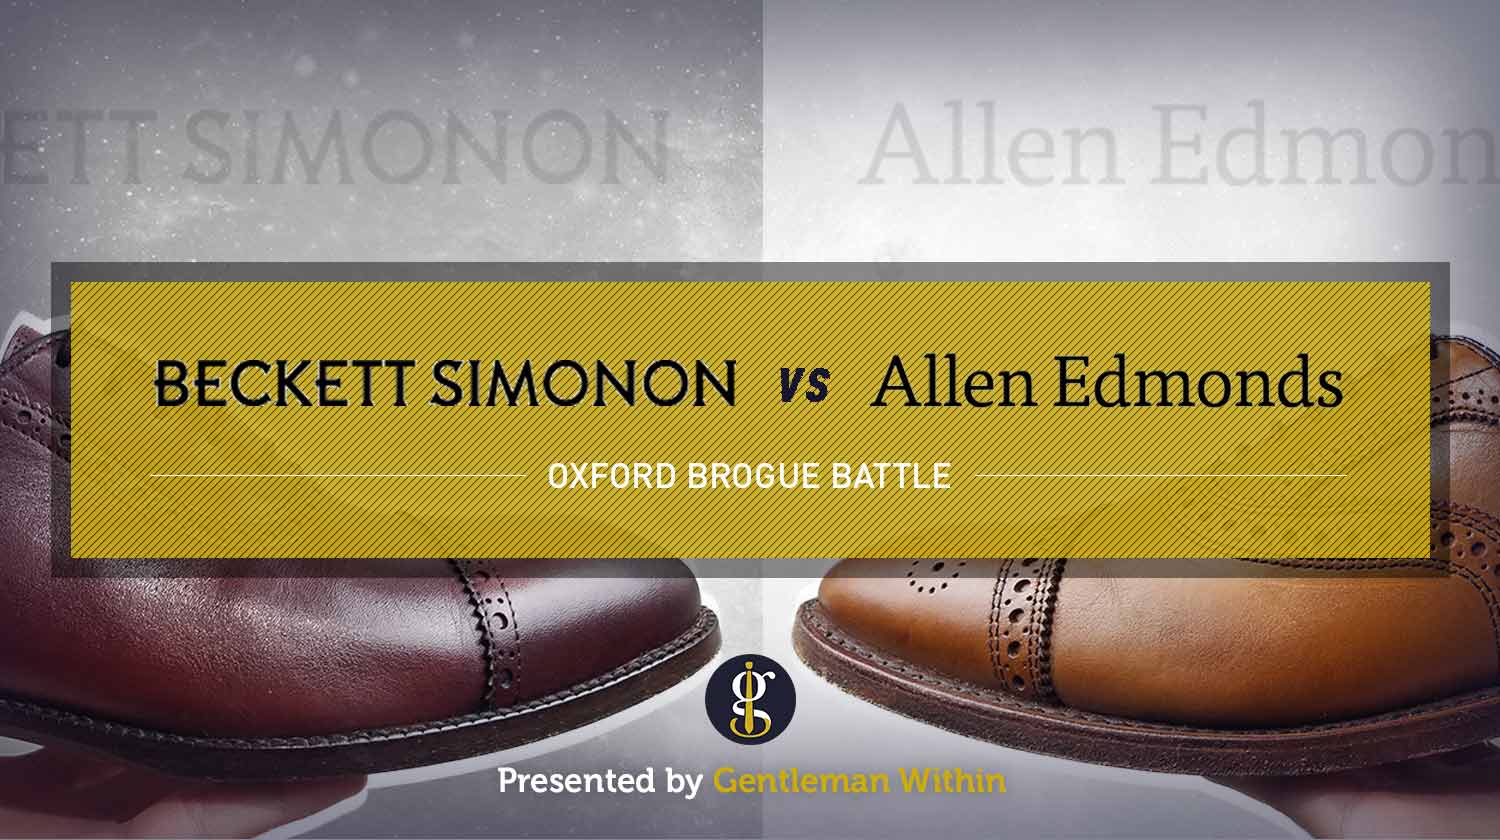 Beckett Simonon Vs Allen Edmonds (Brogue Battle) | GENTLEMAN WITHIN